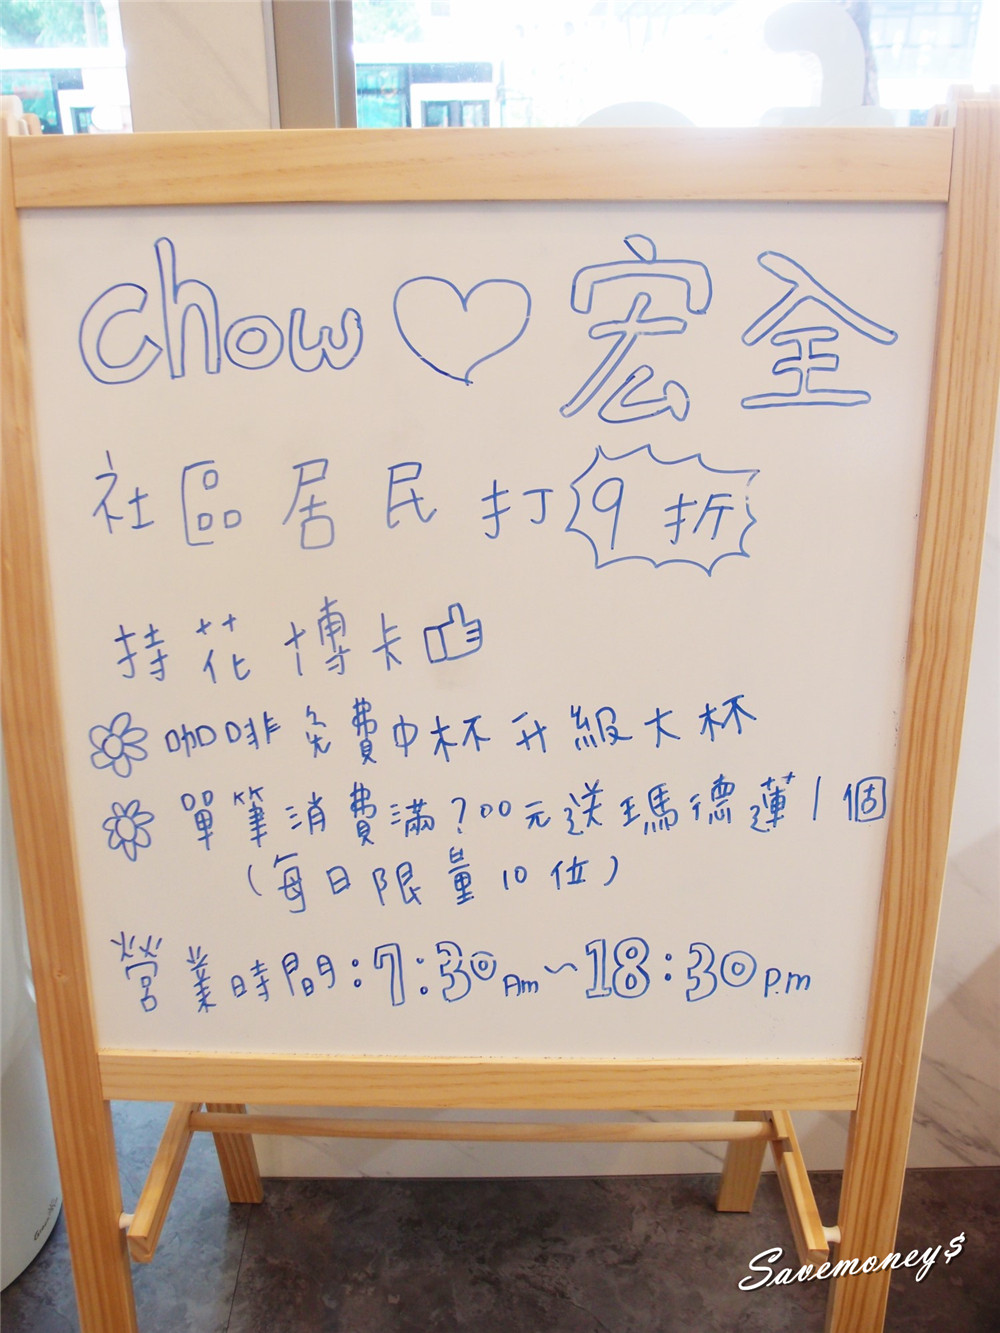 Chow Chow Cafe｜花博特約商店,咖啡享折扣,滿200送小點心